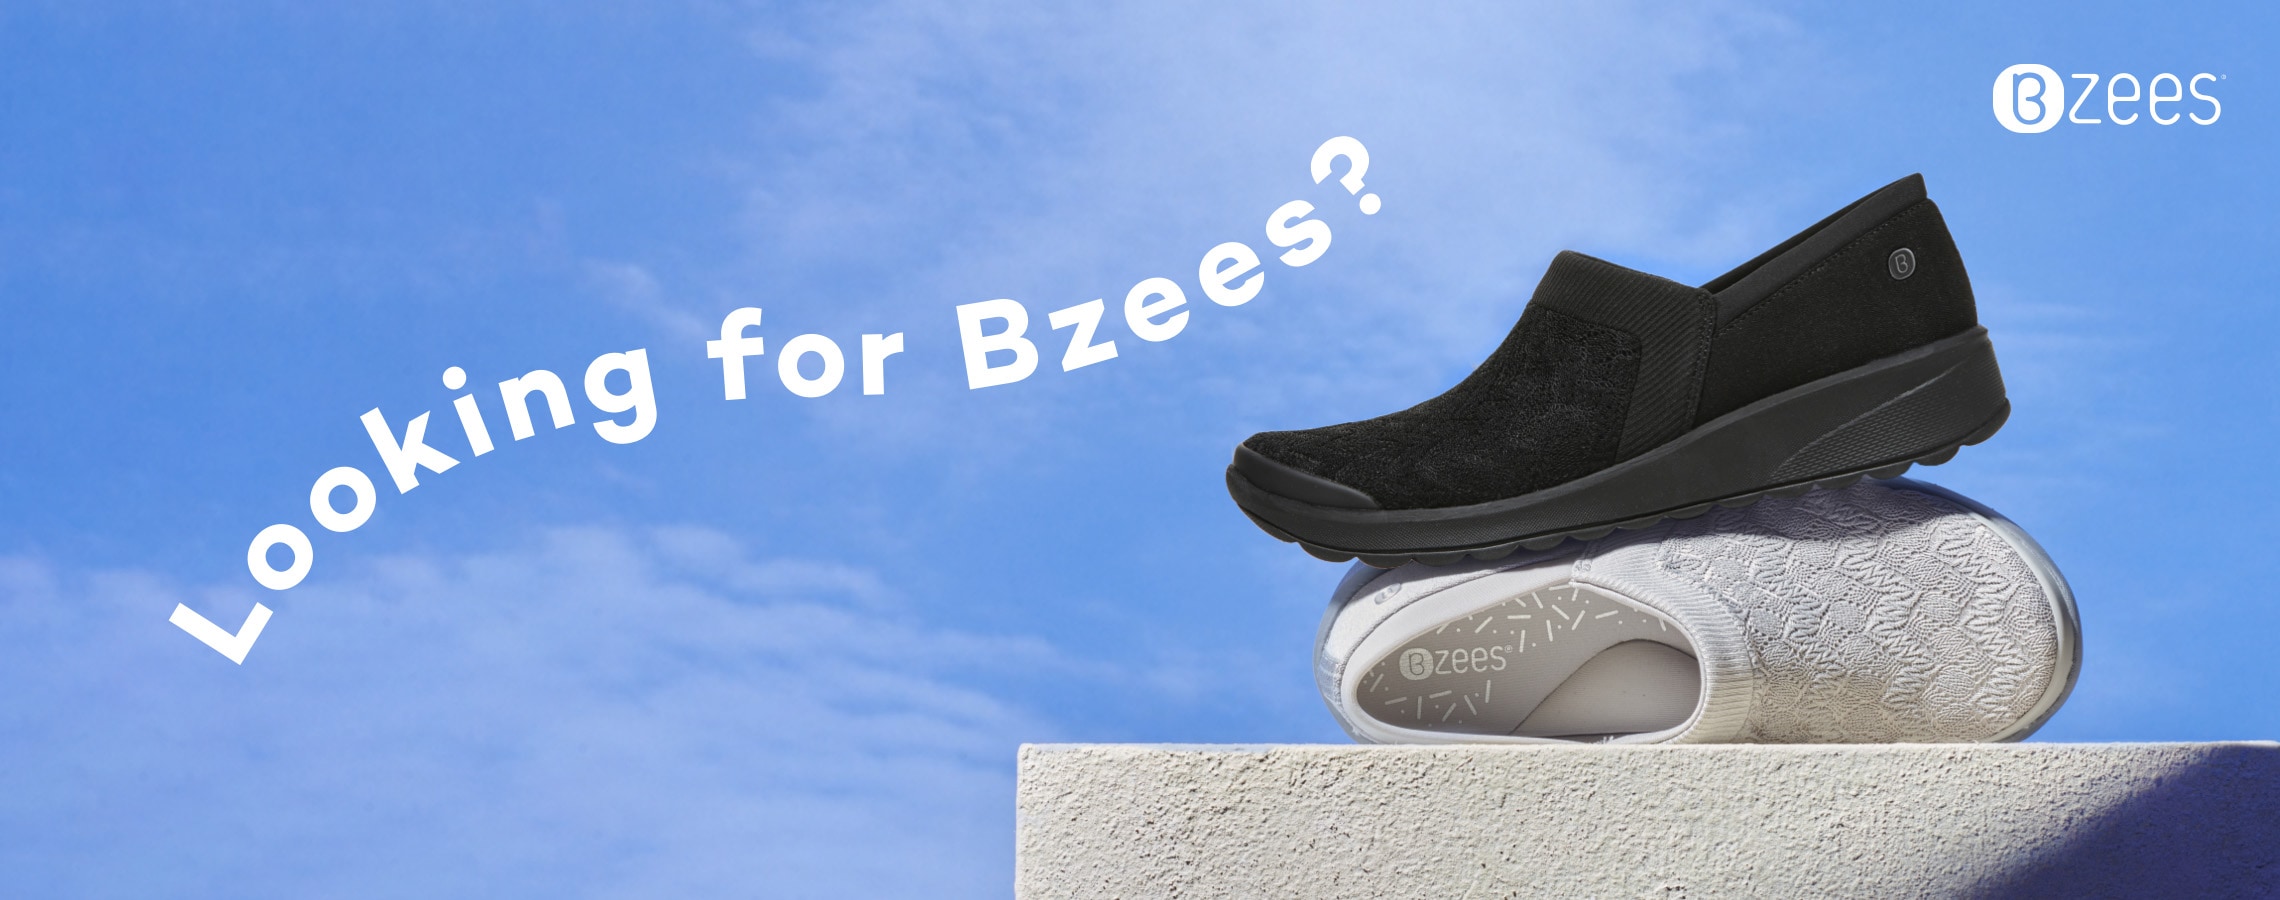 Bzees Shoes